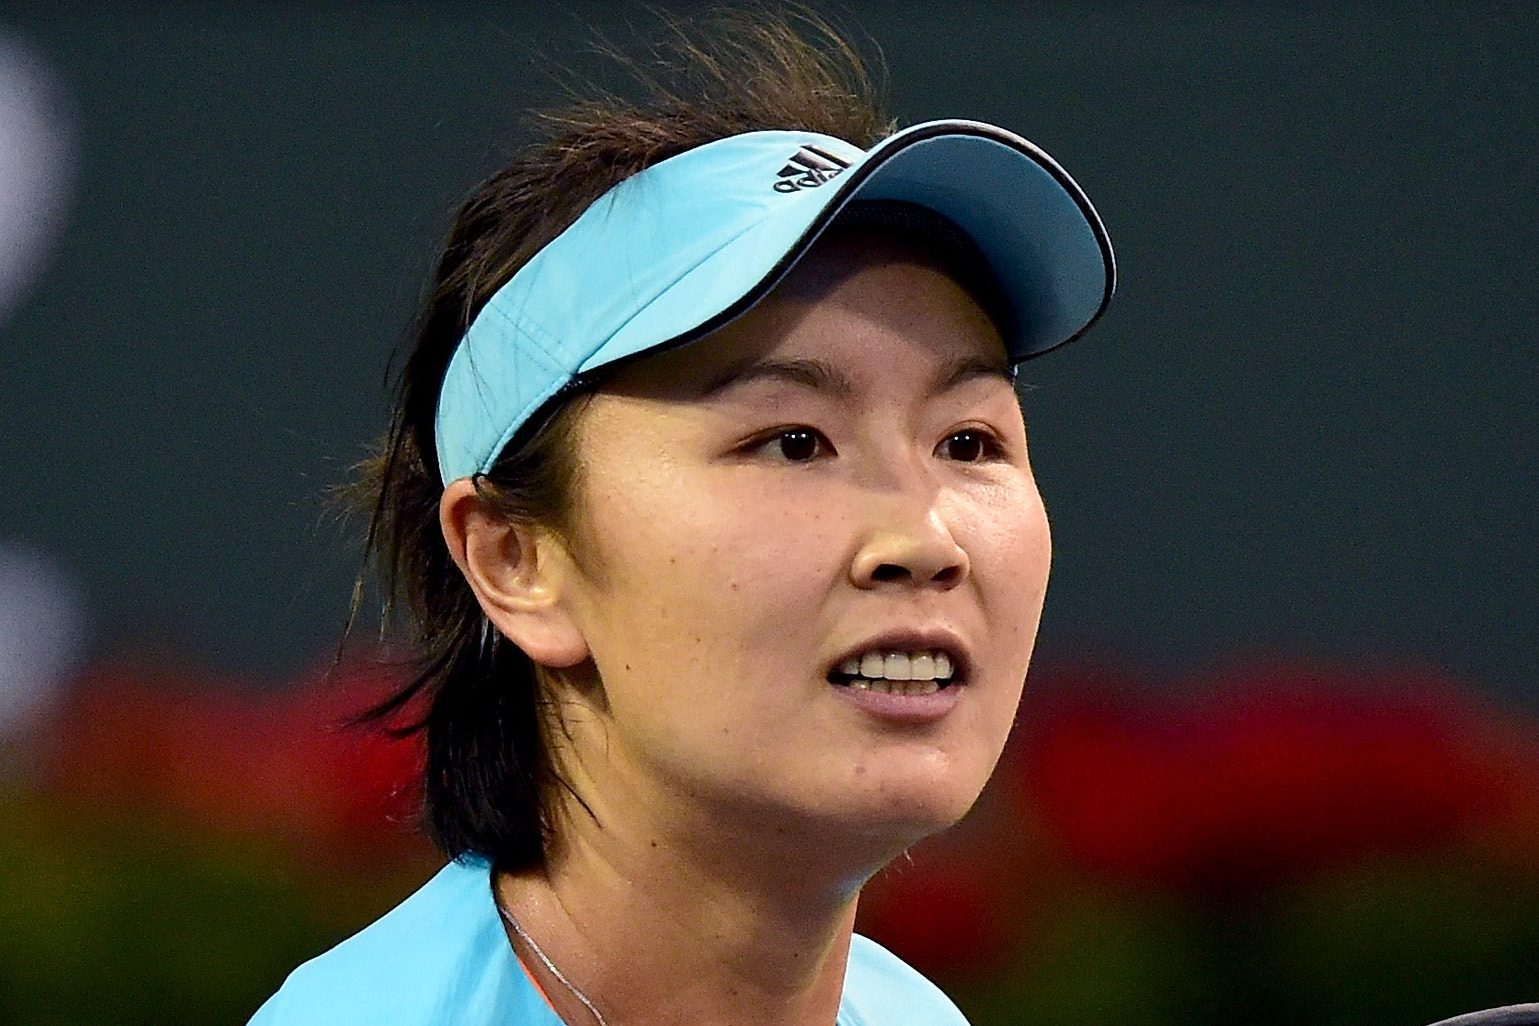 Caso Peng: Wta ribadisce “preoccupazione” per sorte tennista